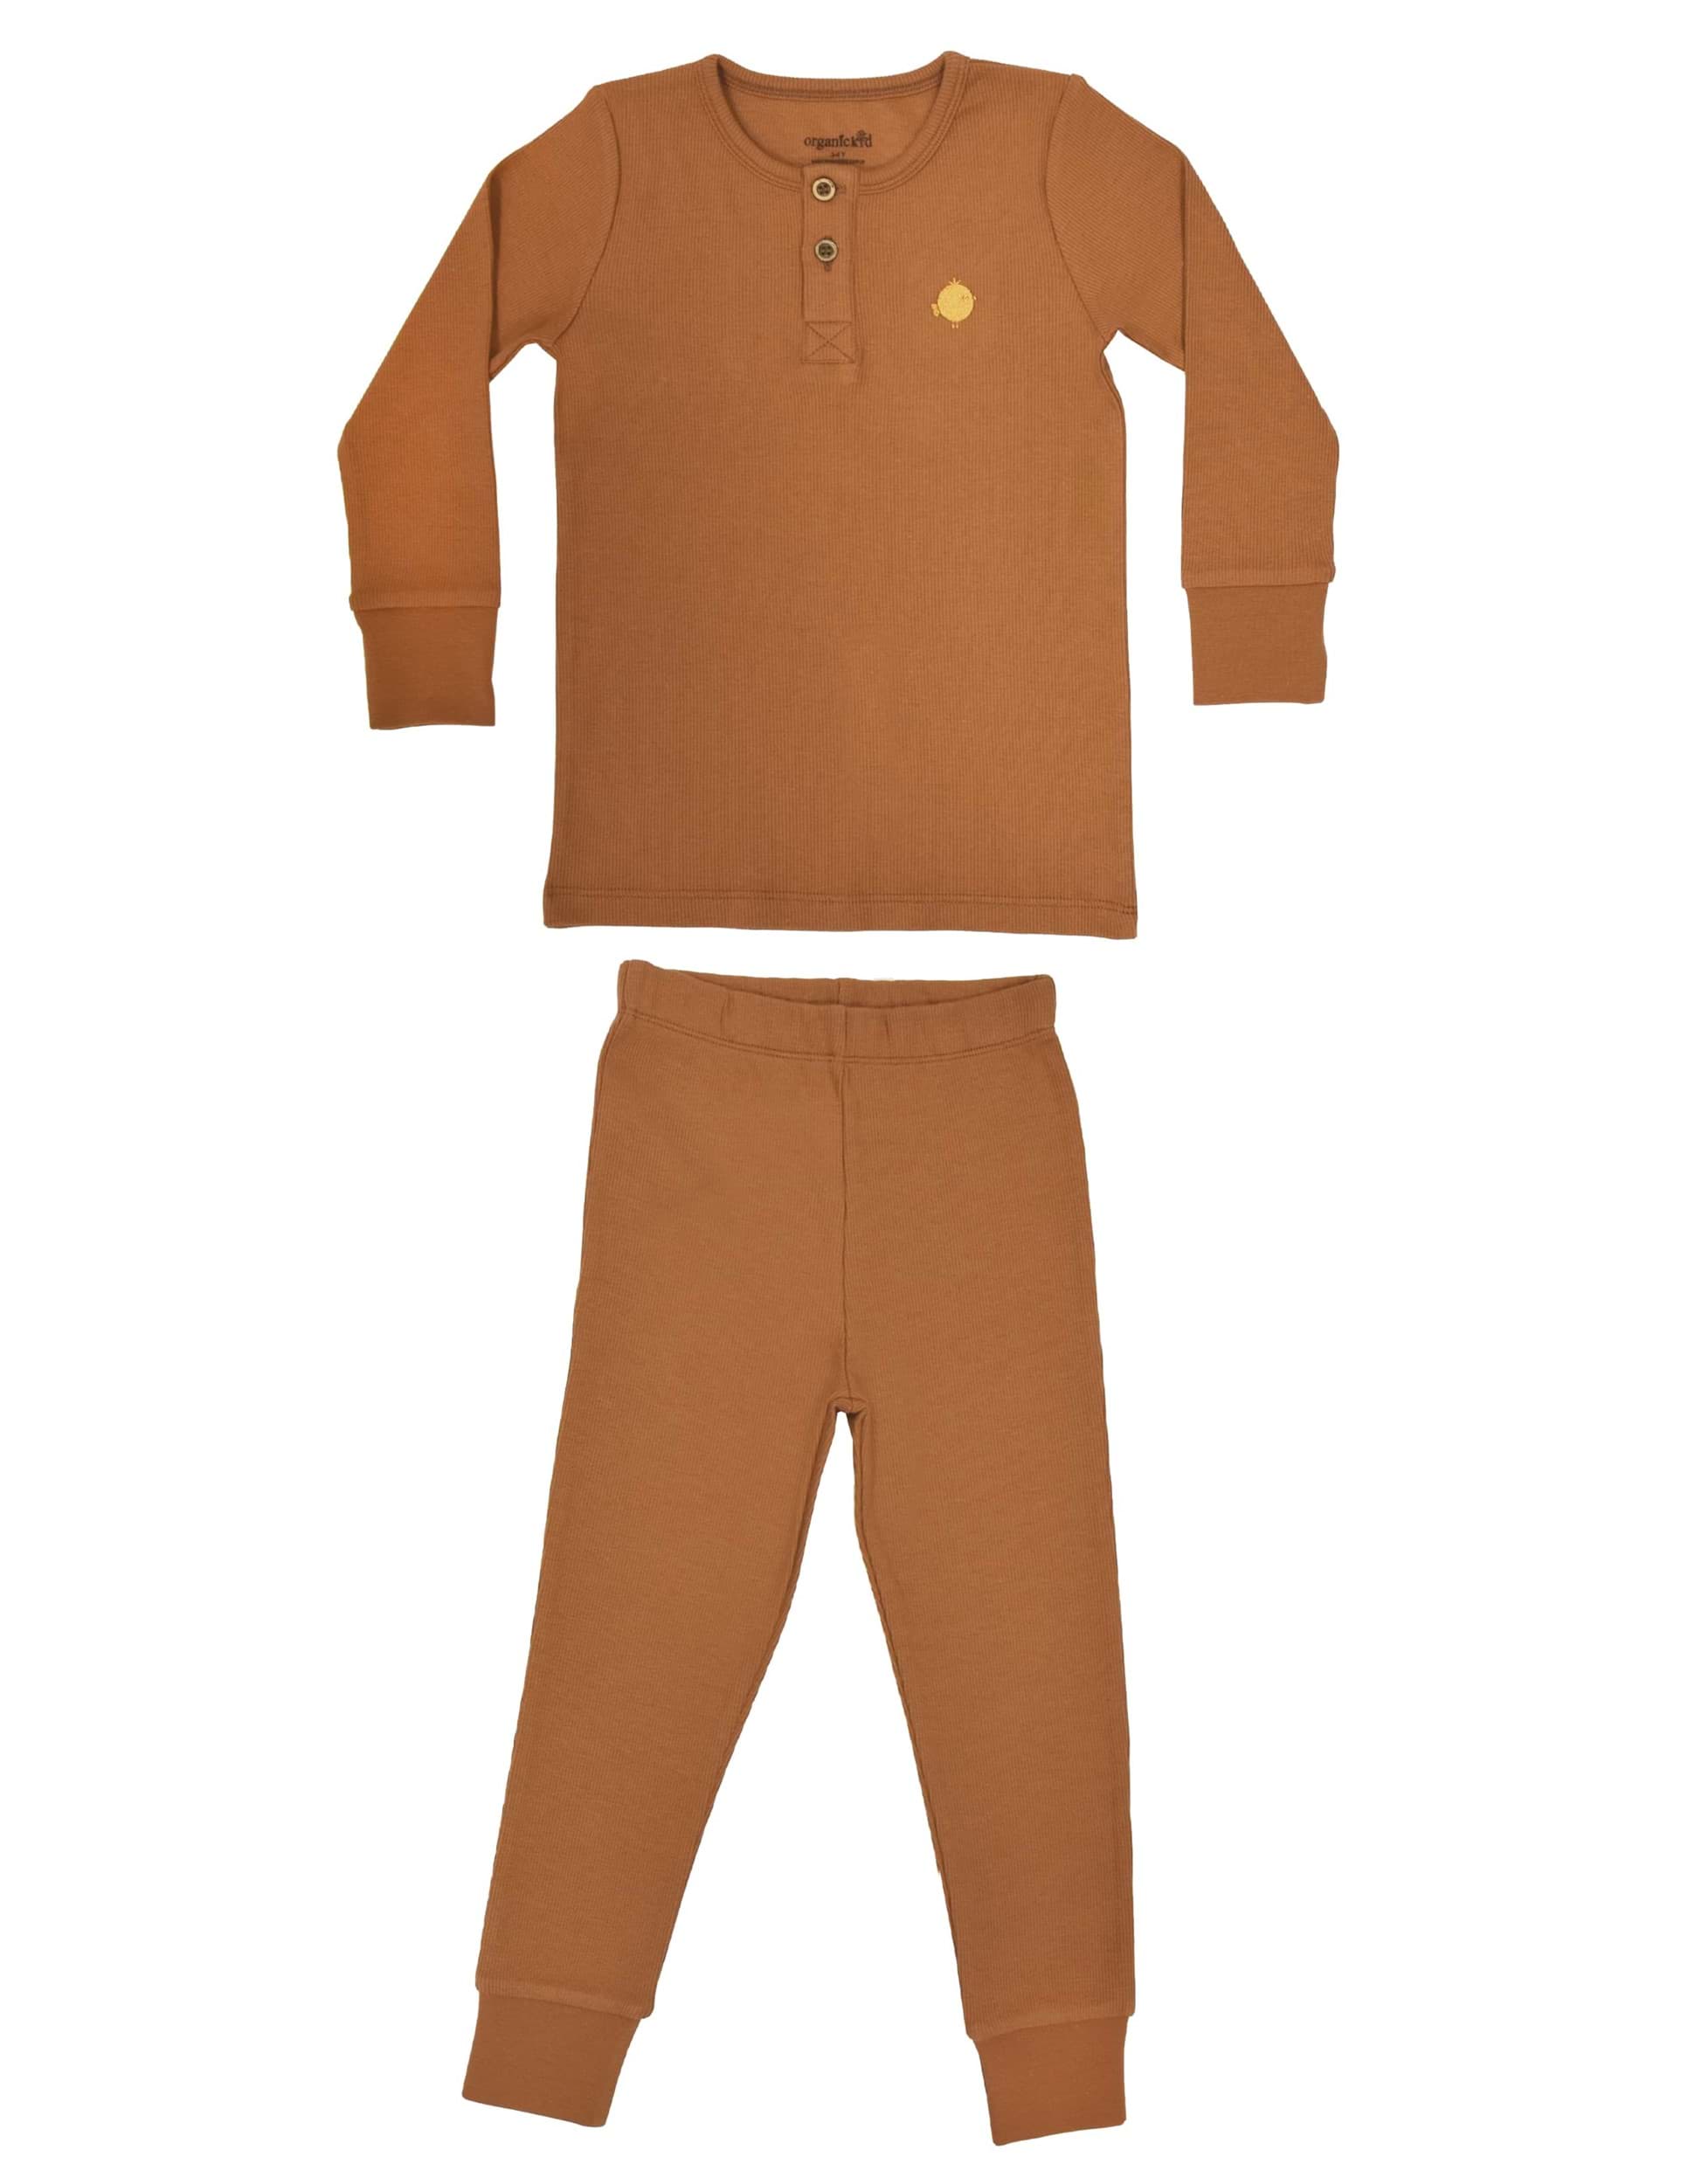 Cosy Erkek Çocuk Kahverengi Kaşkorse Pijama Takımı resmi